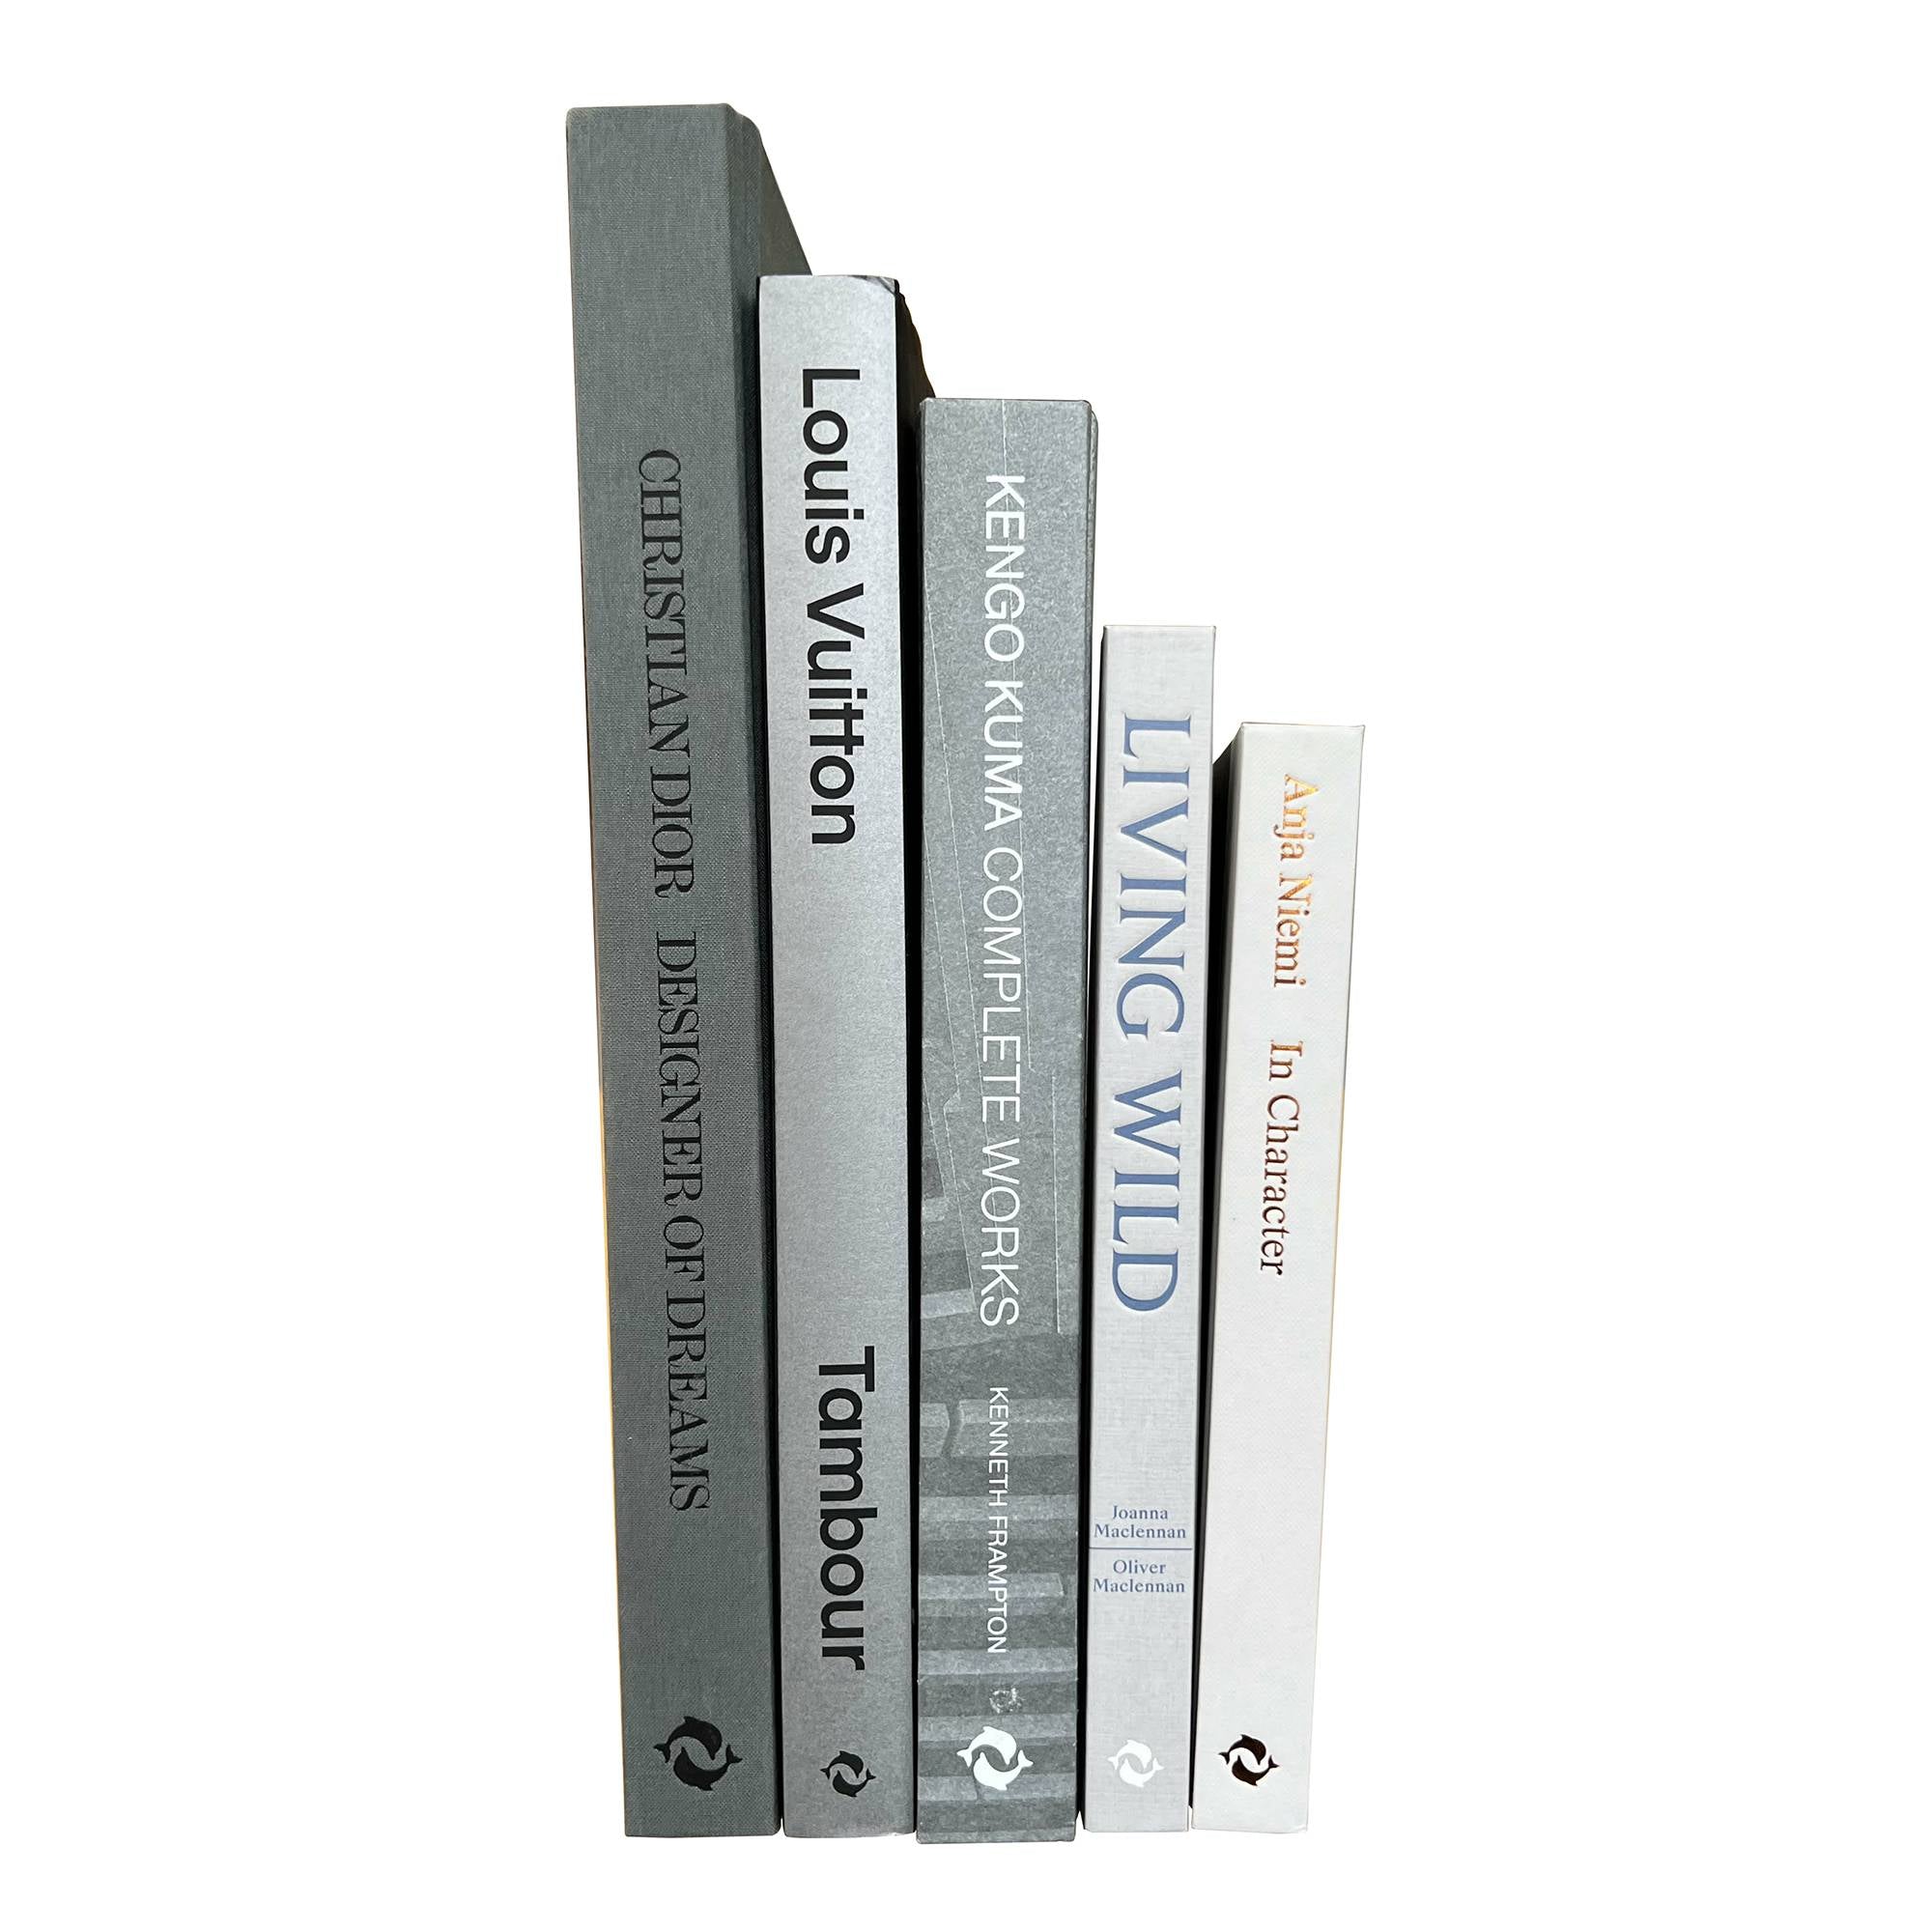 Grey/Silver - 5 Book Bundle